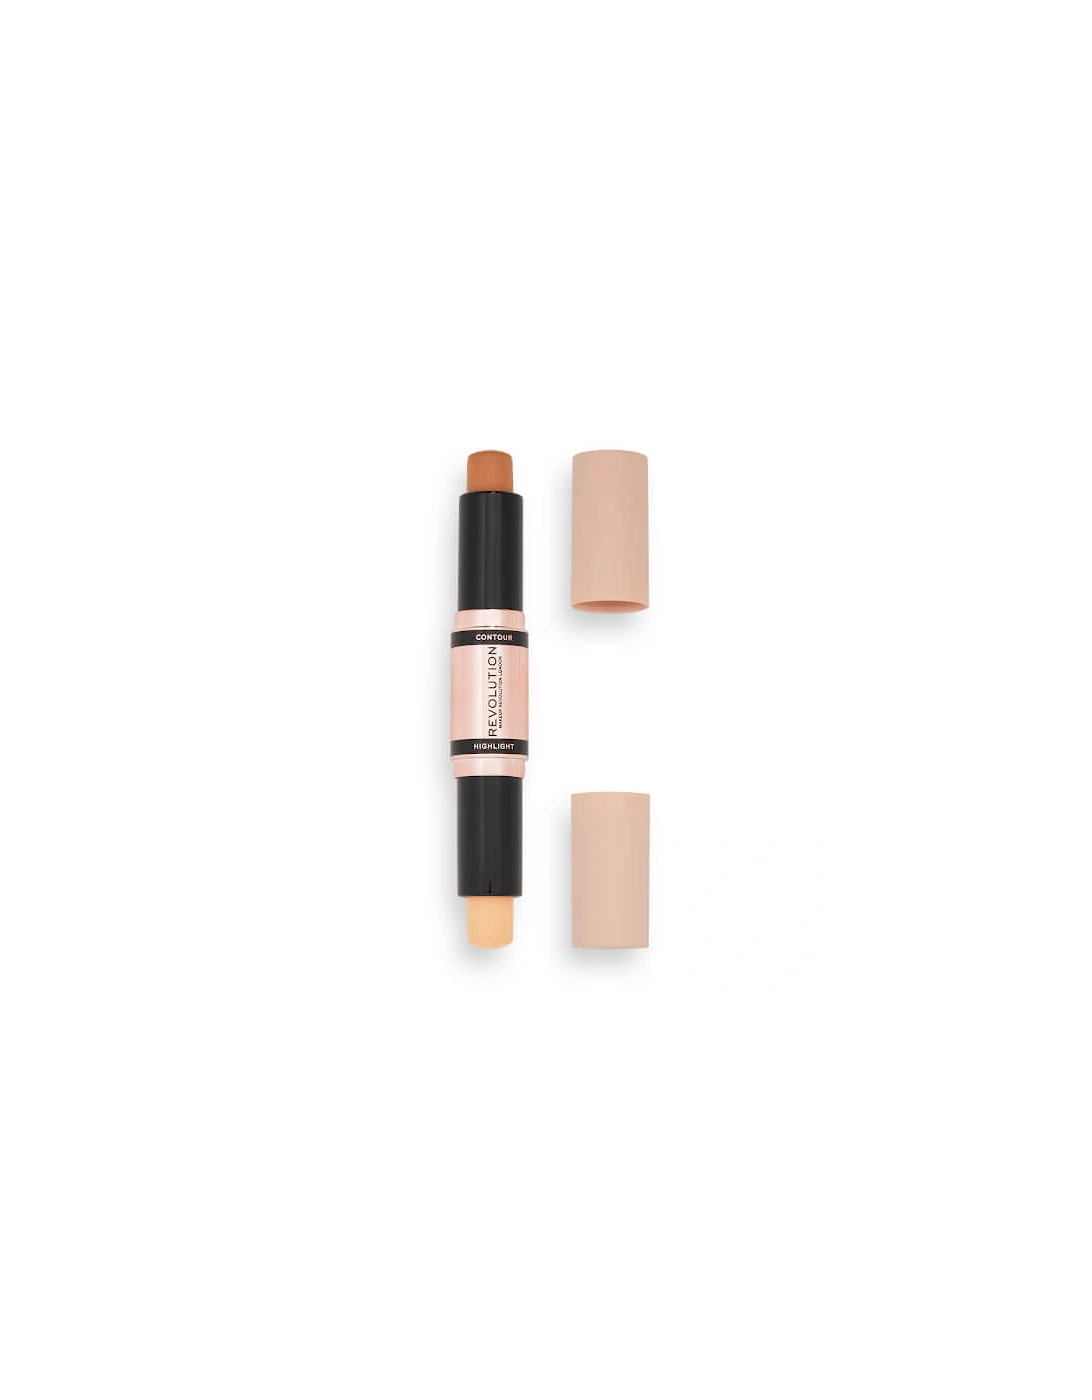 Makeup Fast Base Contour Stick - Medium 2.4g, 2 of 1